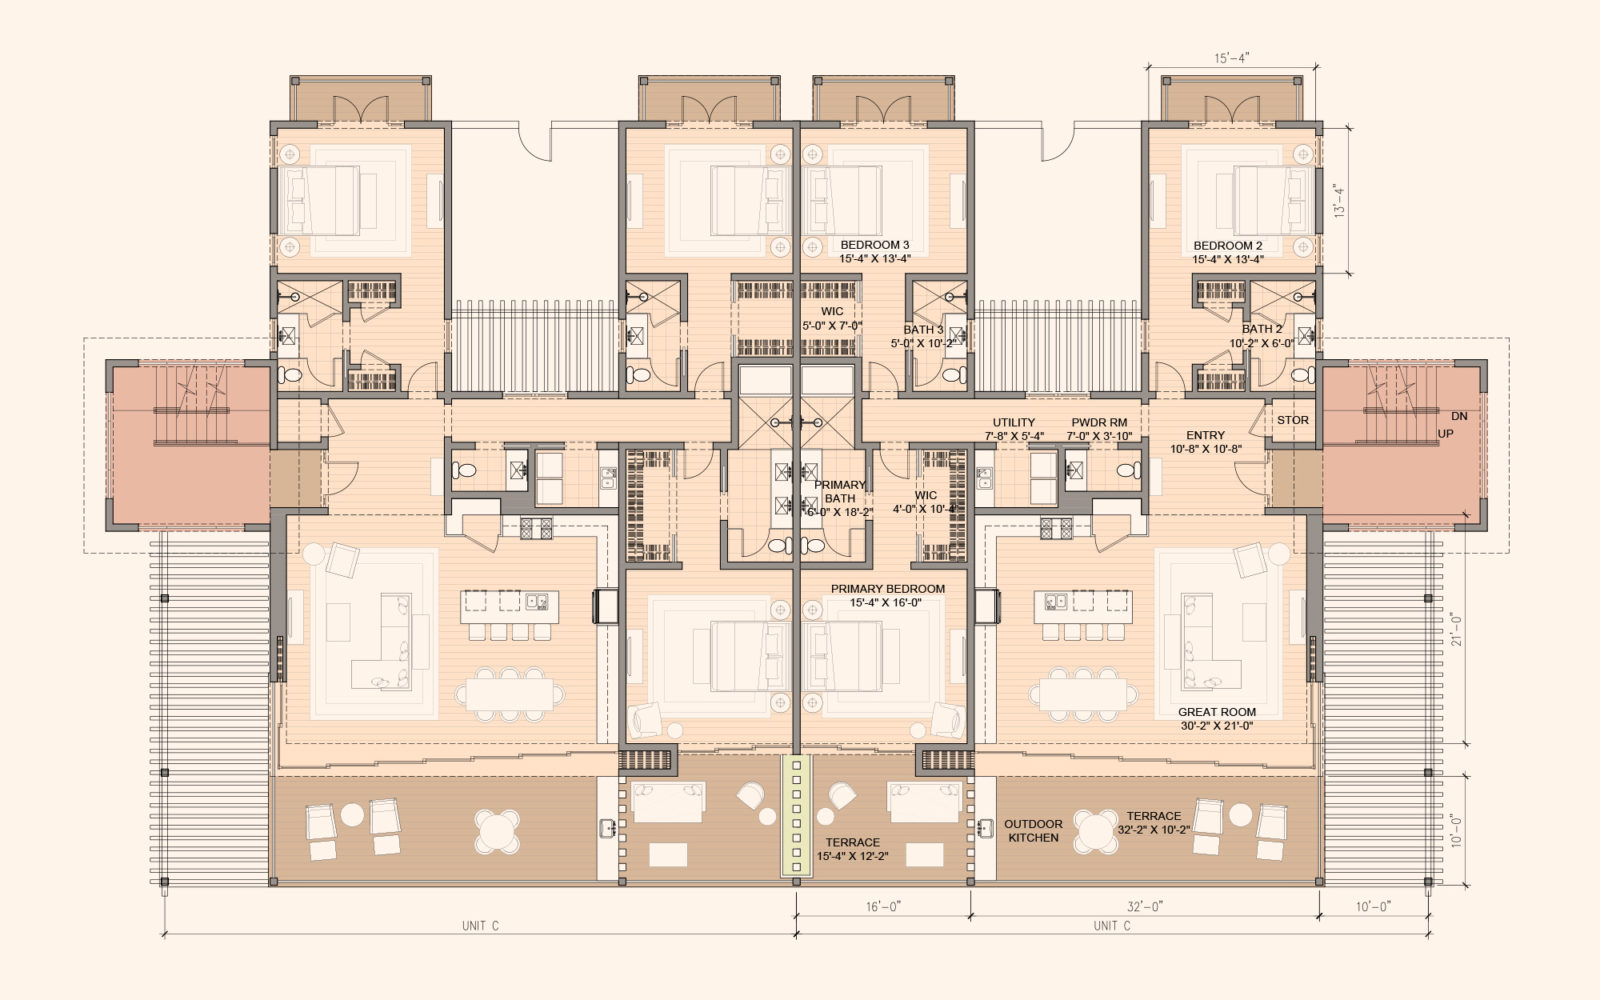 The upper level 3 bedroom floorplan